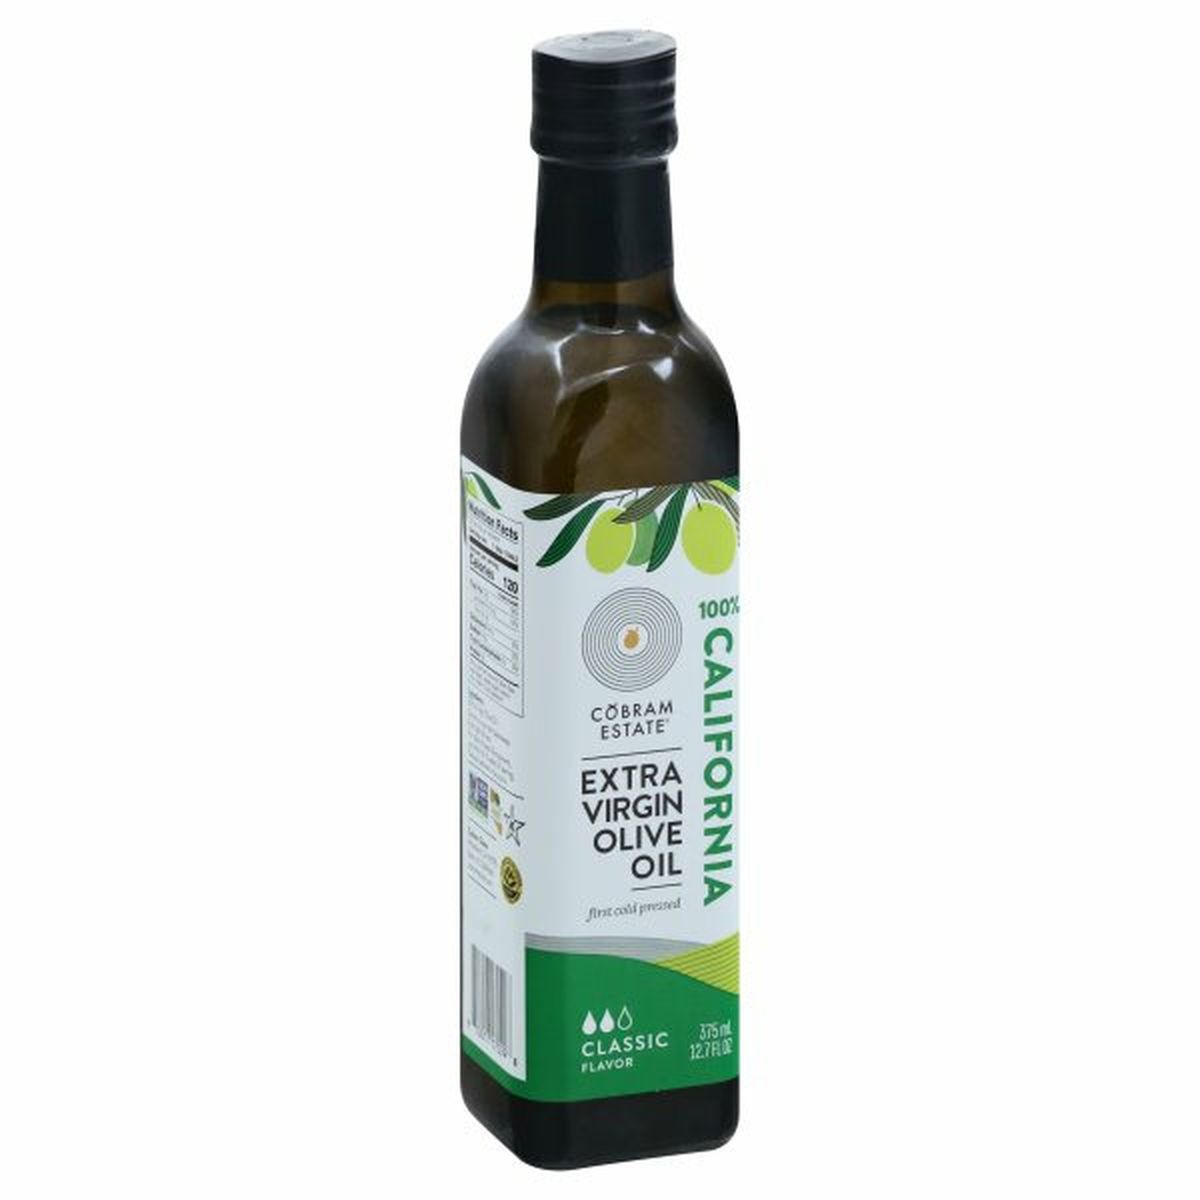 Calories in Cobram Estate Olive Oil, Extra Virgin, Classic Flavor